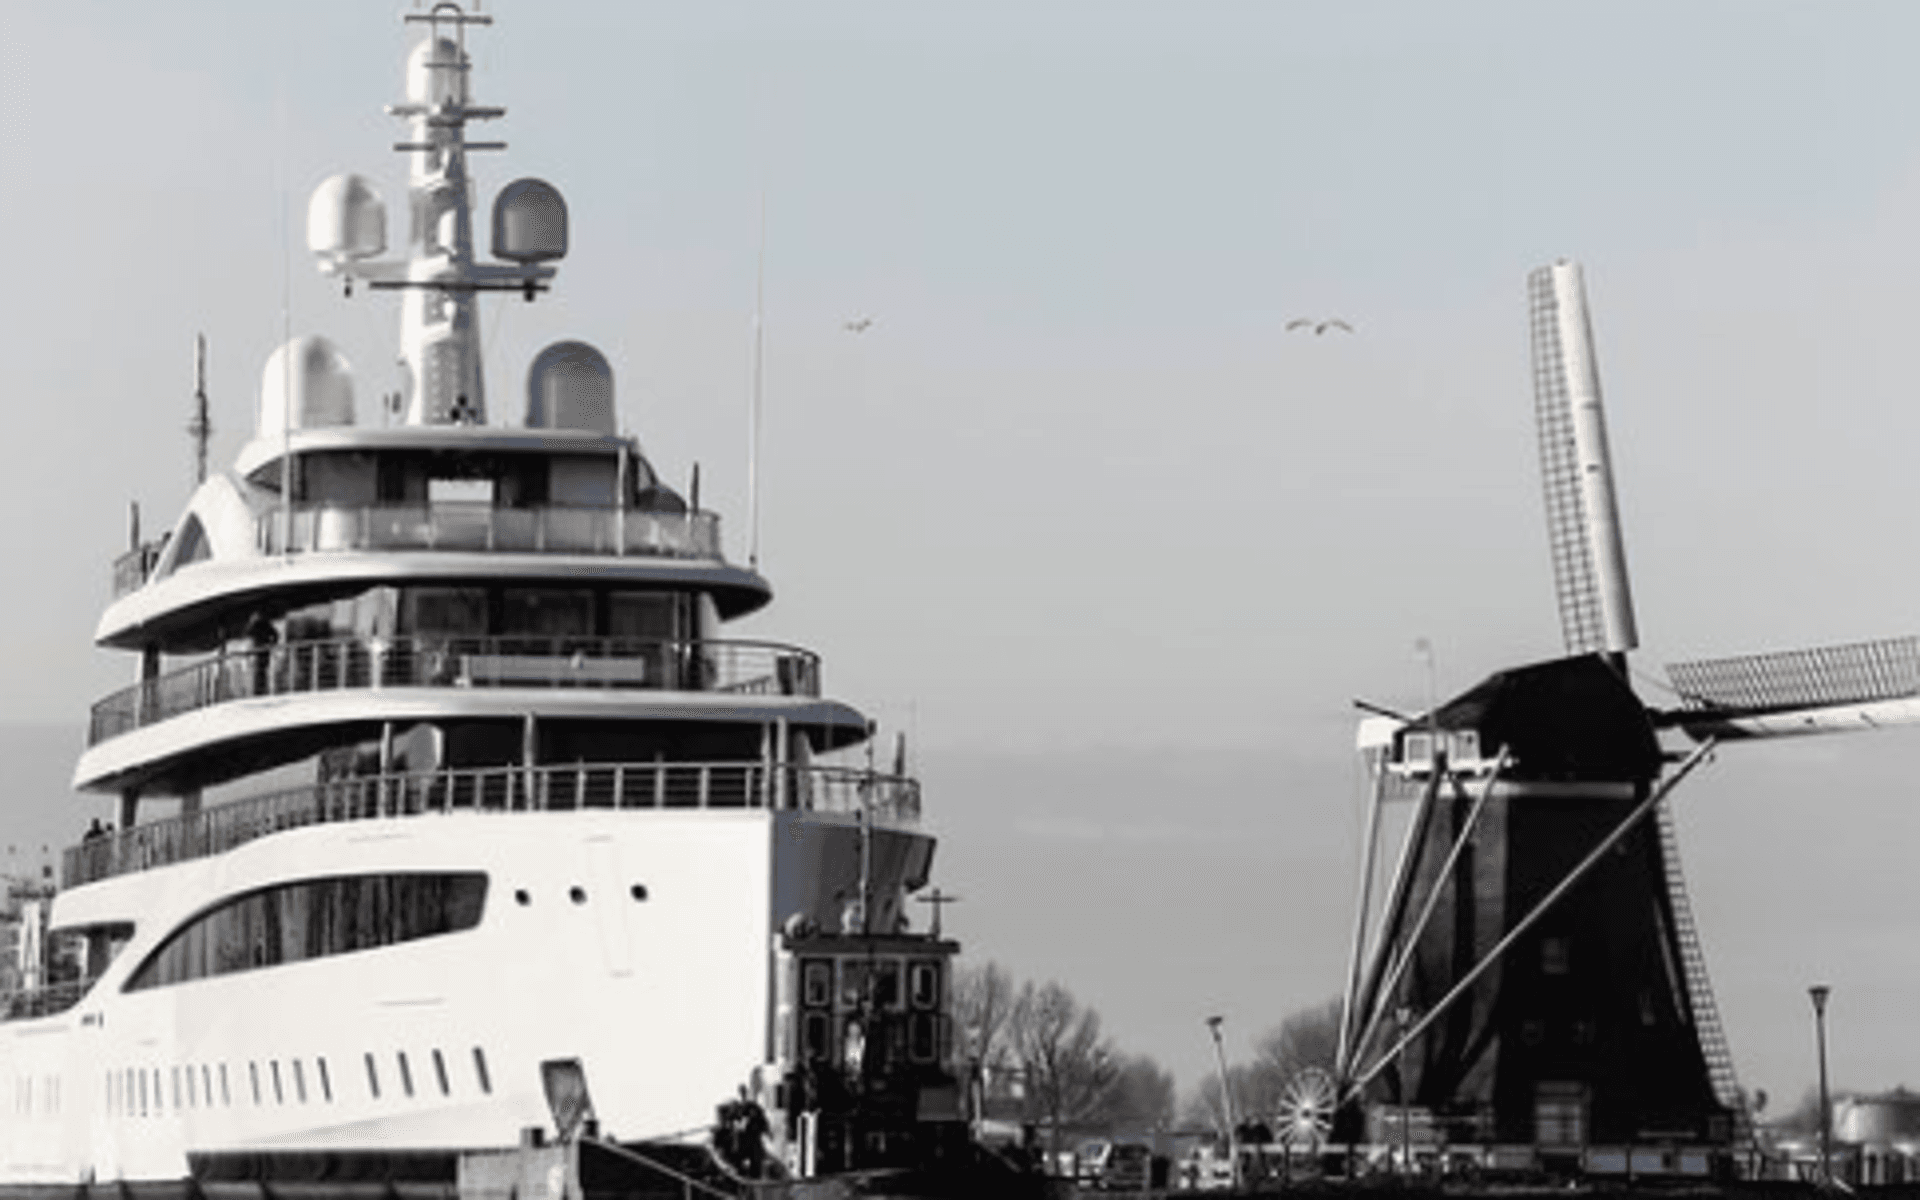 Den 94 meter långa yachten Project 817, byggt av det nederländska varvet Feadship, transporterades förra veckan genom de smala kanalerna från Feadships bas i Kaag till hamnen i Rotterdam vid Nordsjön.